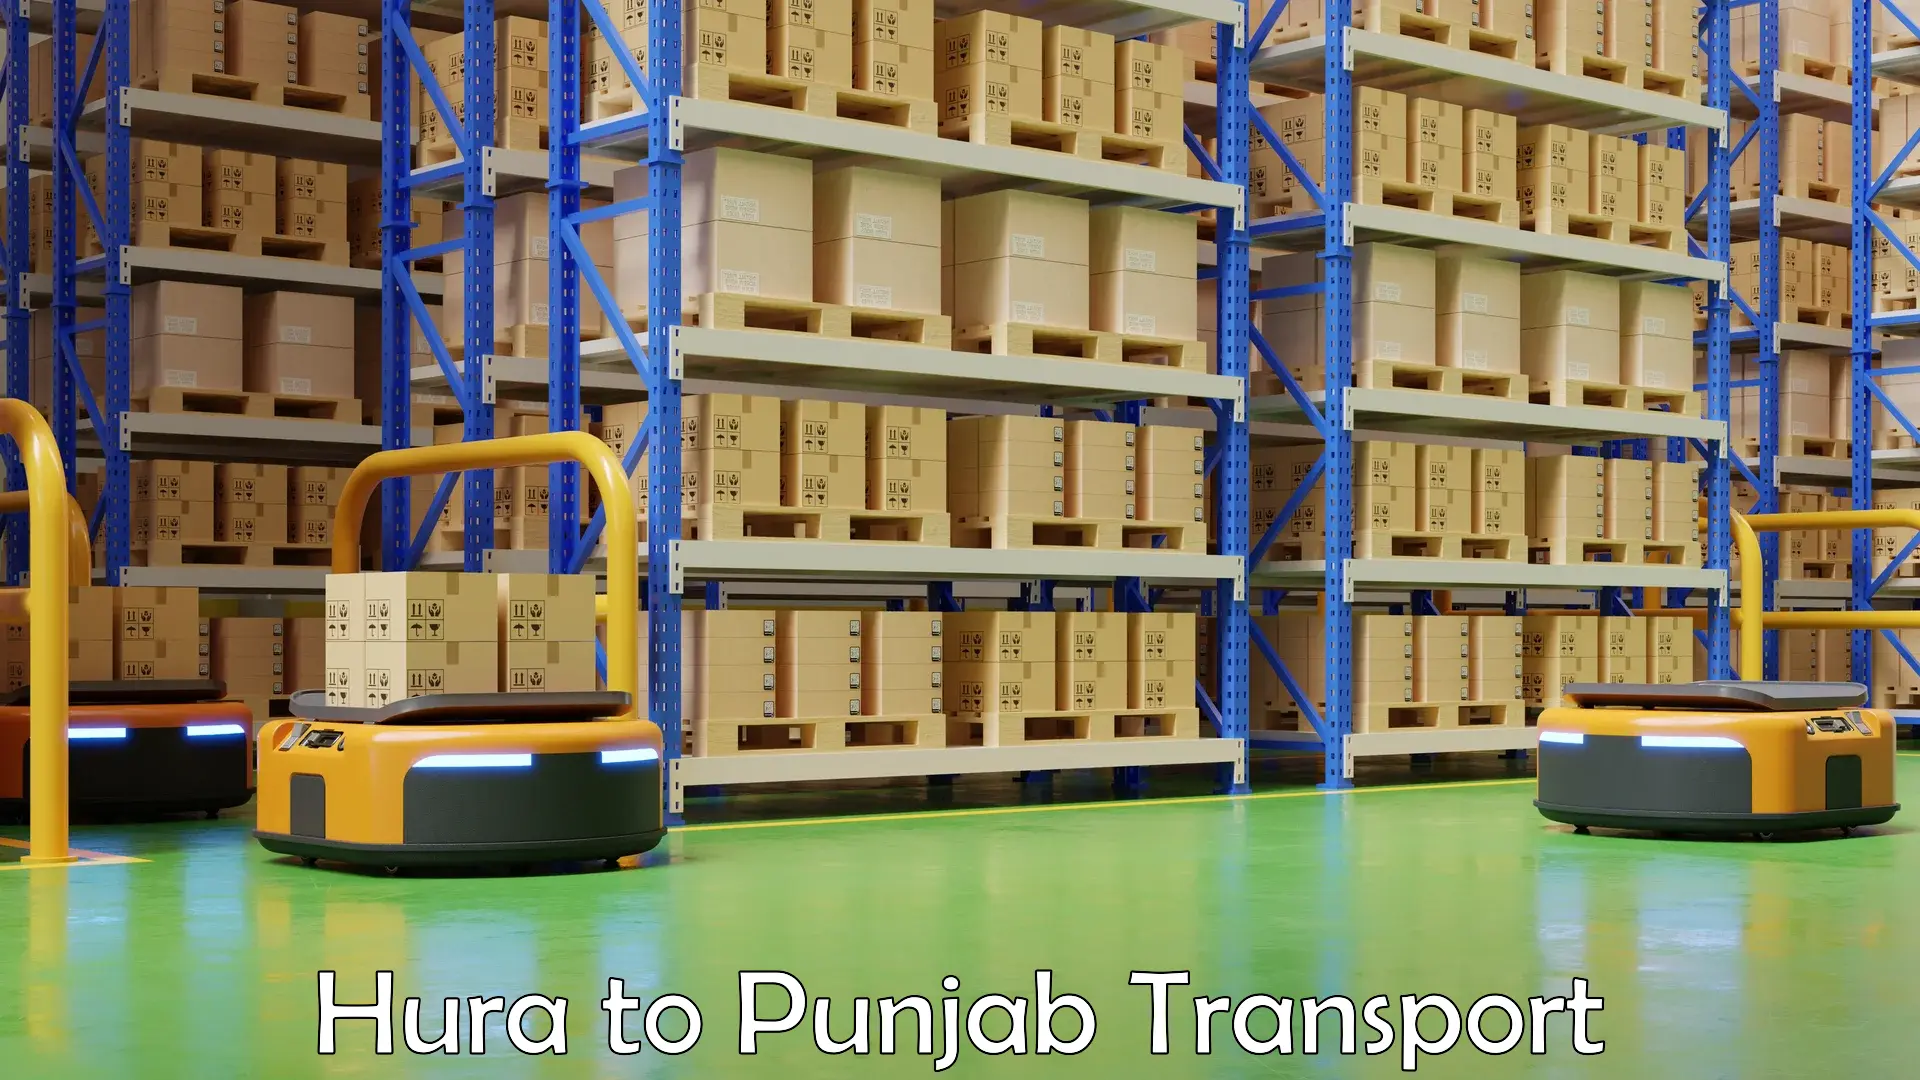 Online transport booking Hura to Punjab